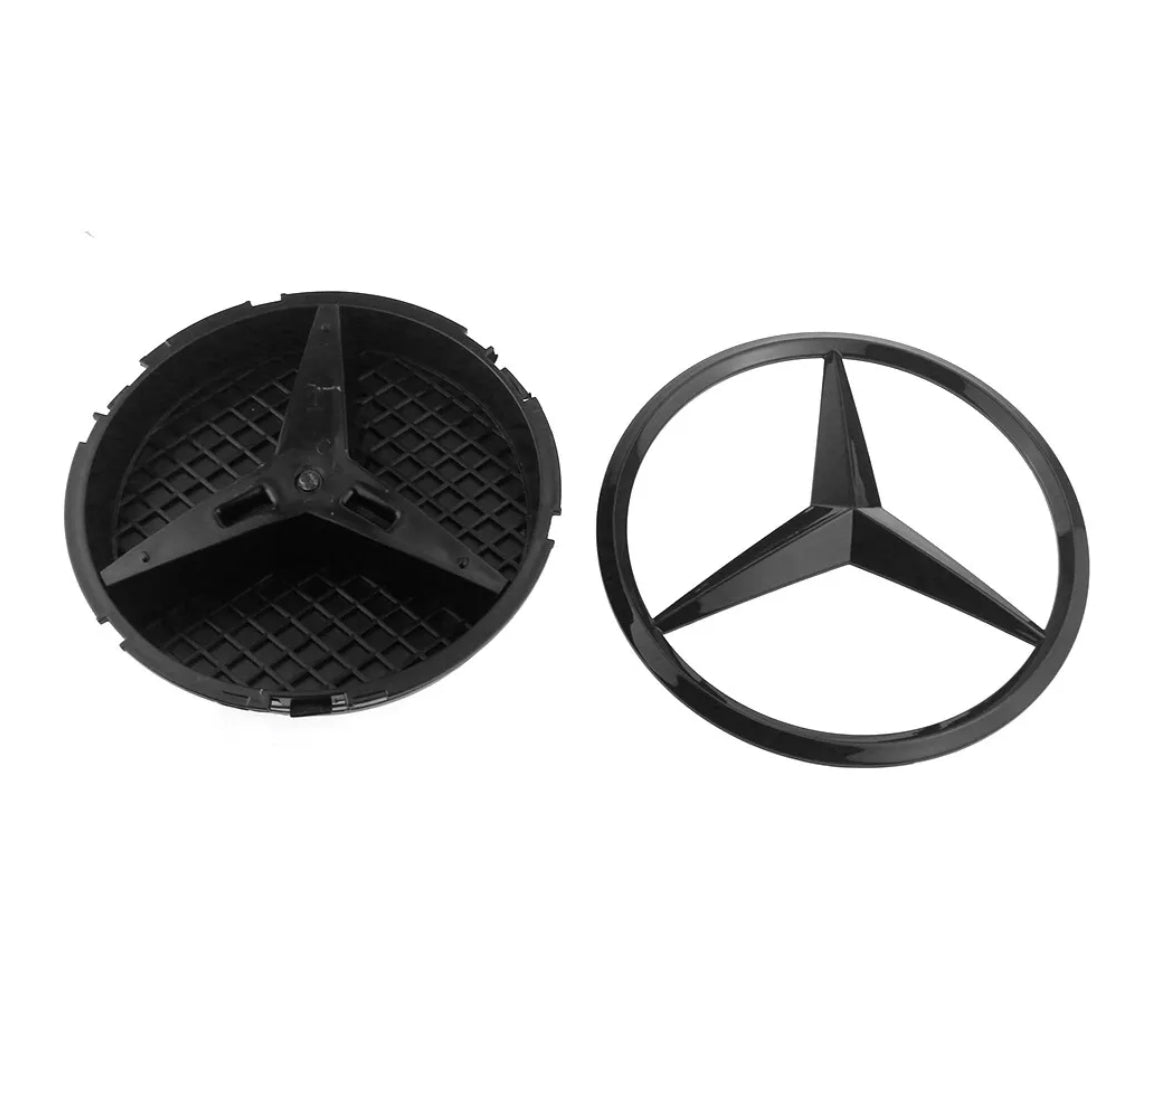 Emblème de logo Mercedes Classe A - Povcars